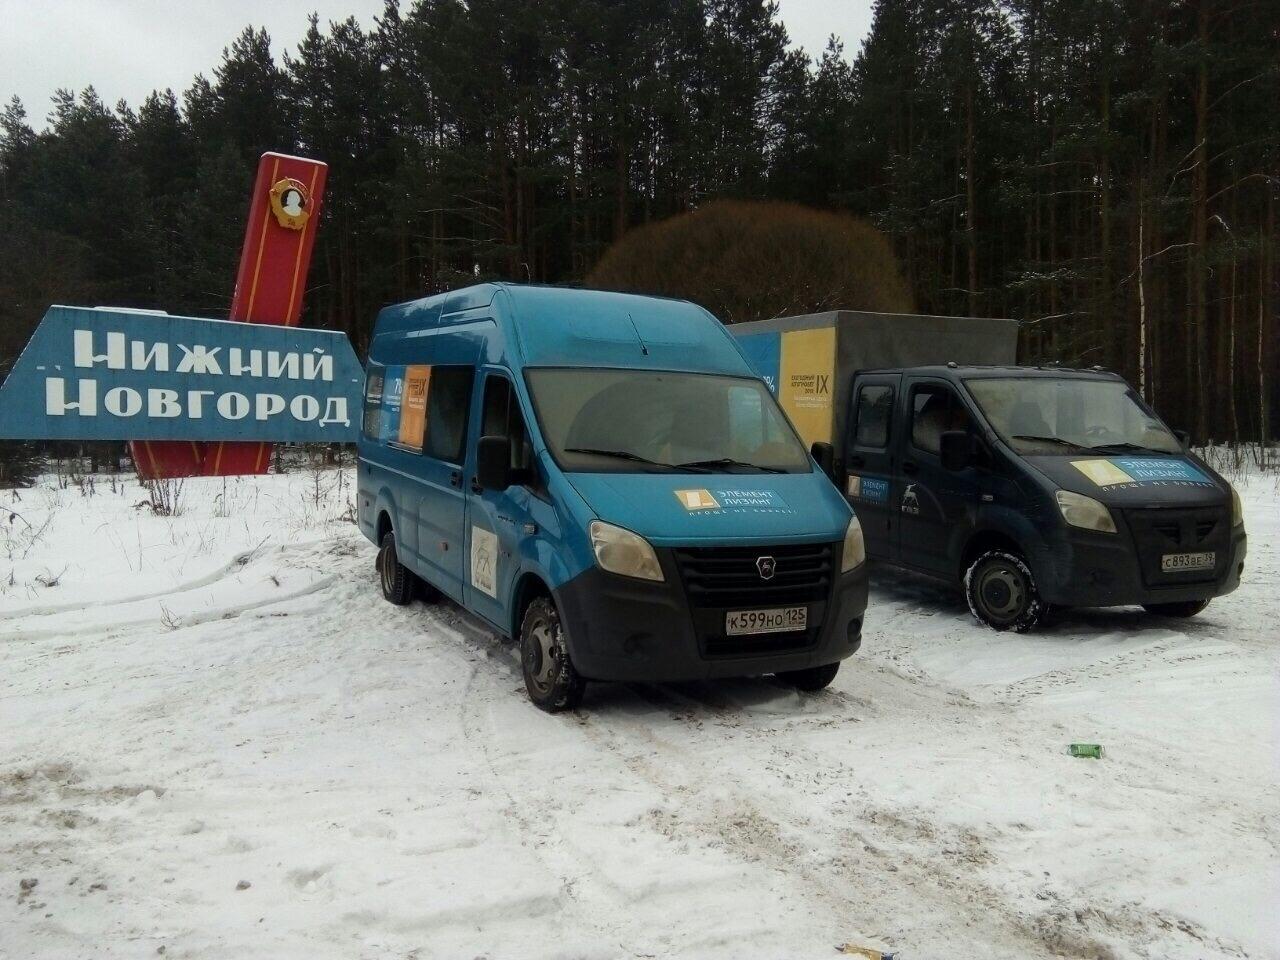 Прошел заключительный этап Автопробега. Две ГАЗели 4,6 встретились в Нижнем Новгороде. 